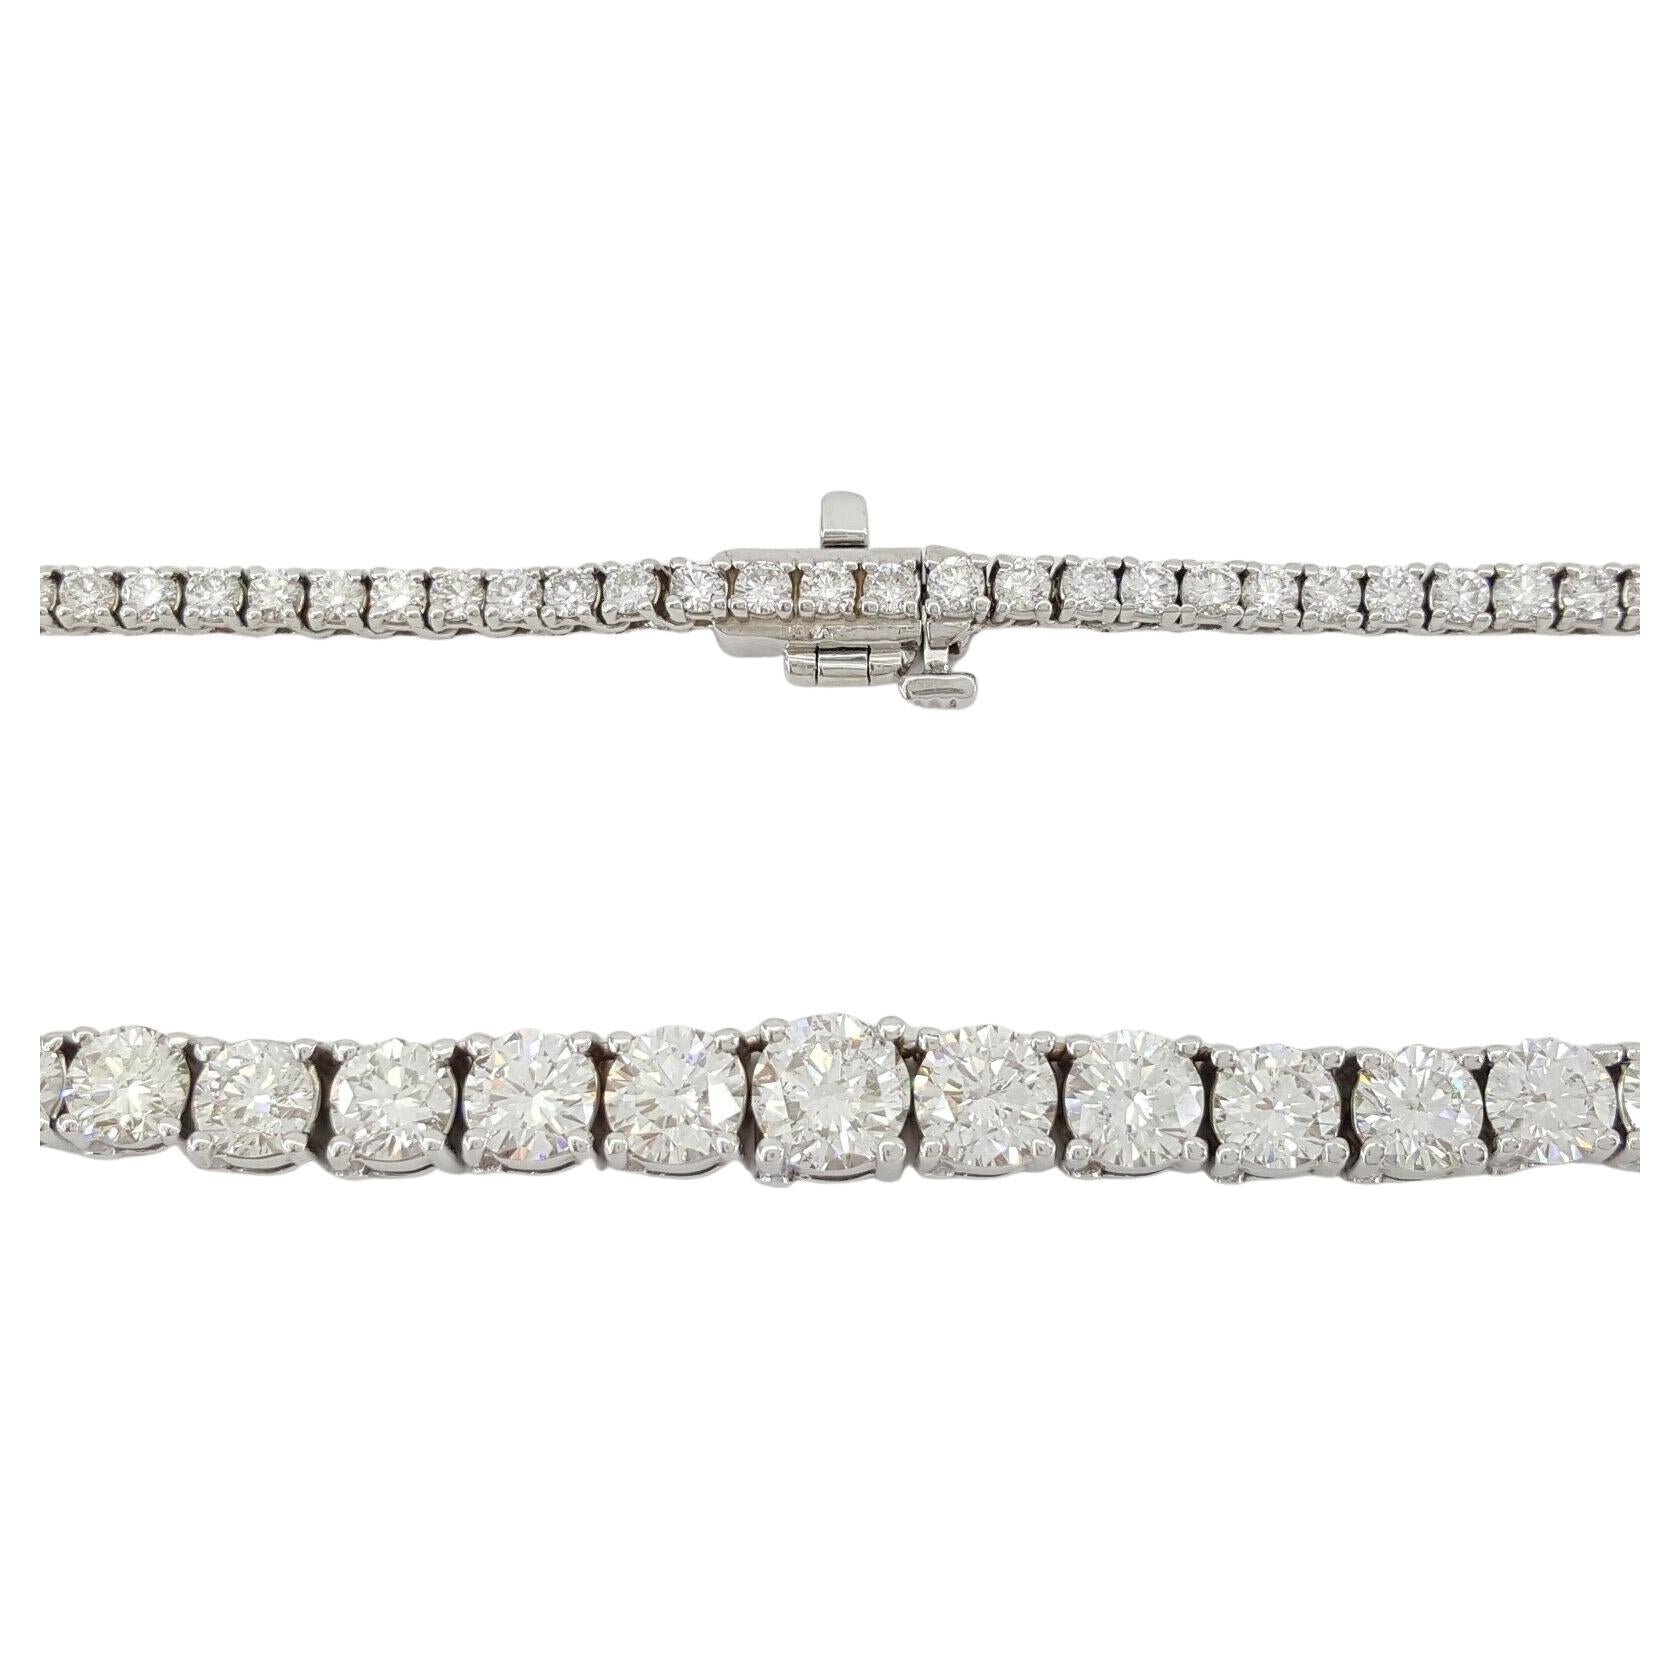 15 ct Round Brilliant Cut Diamond Riviera Diamond Line Necklace in 14K White Gold 17